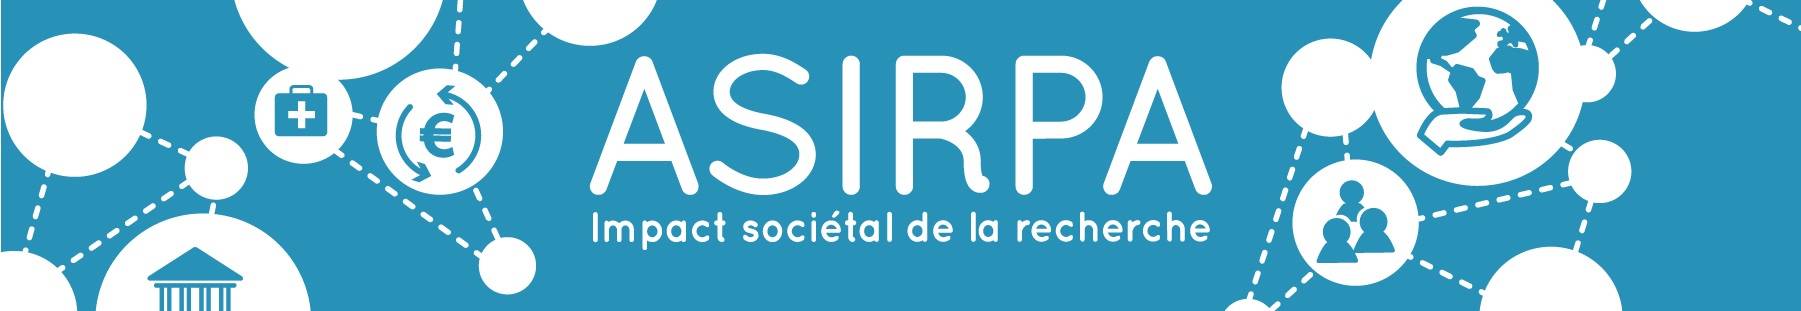 Bienvenue sur le site ASIRPA, Analyse de l’impact sociétal de la recherche